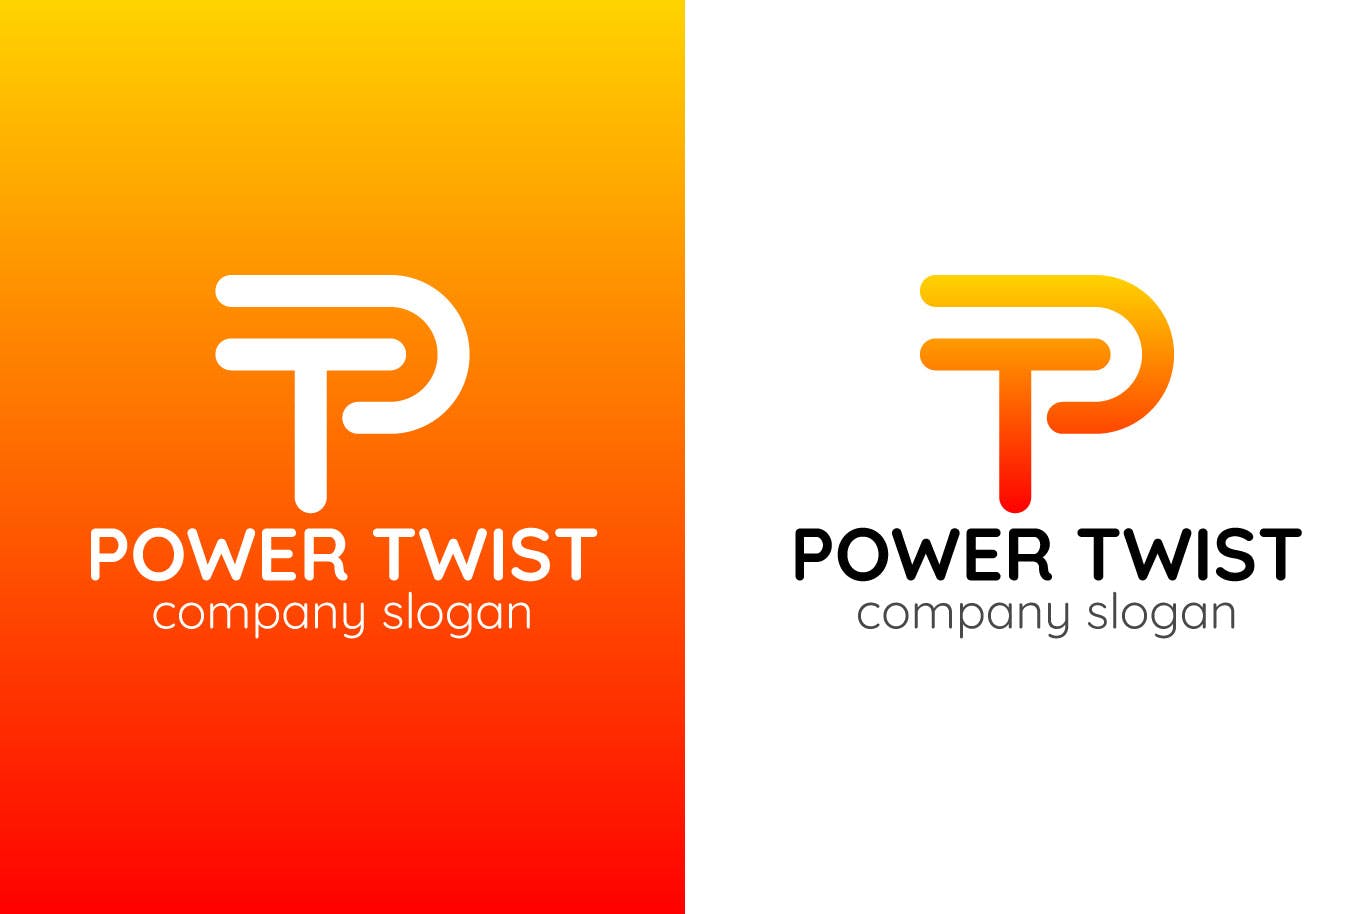 P字母图形创意Logo设计素材库精选模板 Power Twist Creative Logo Template插图(1)